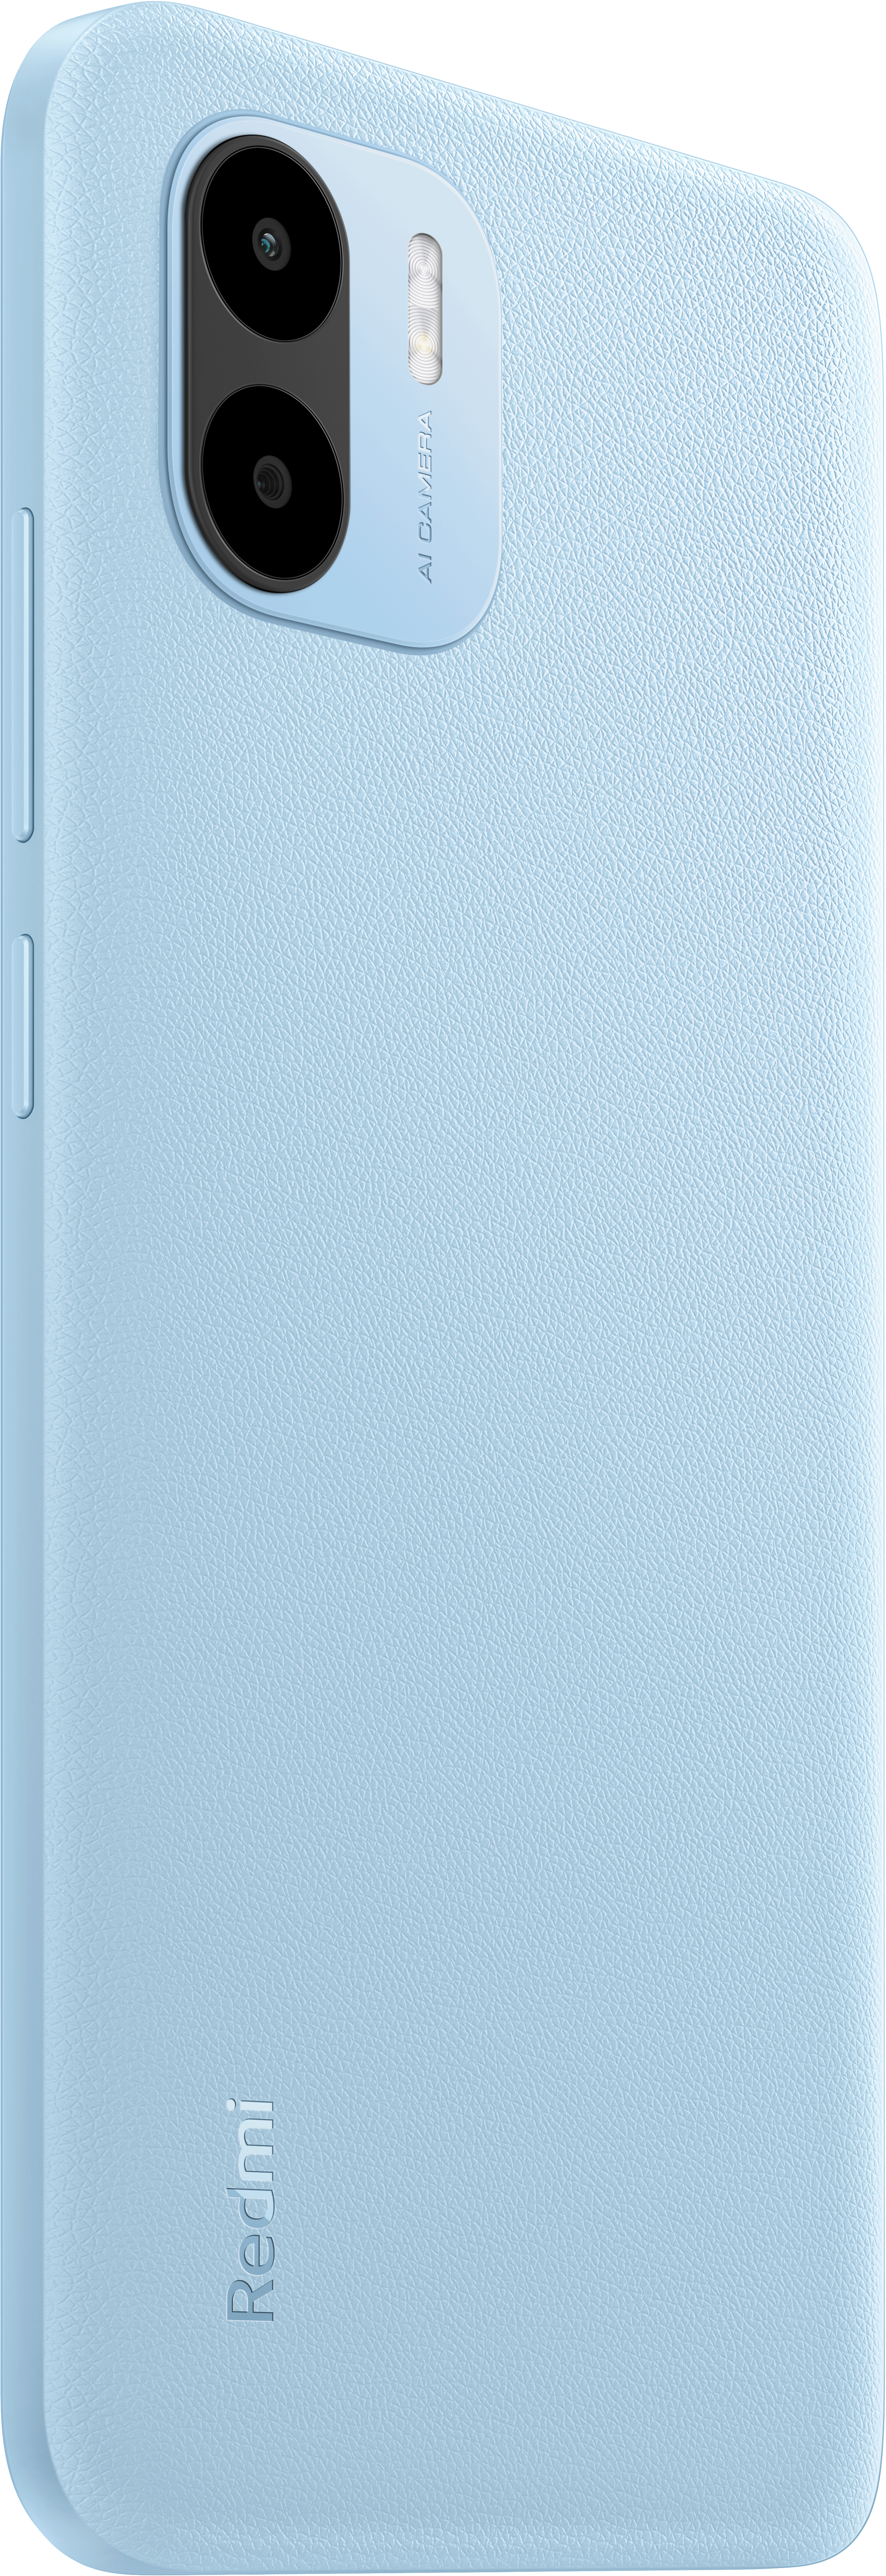 Redmi XIAOMI Dual Blue 32 Light GB A2 SIM